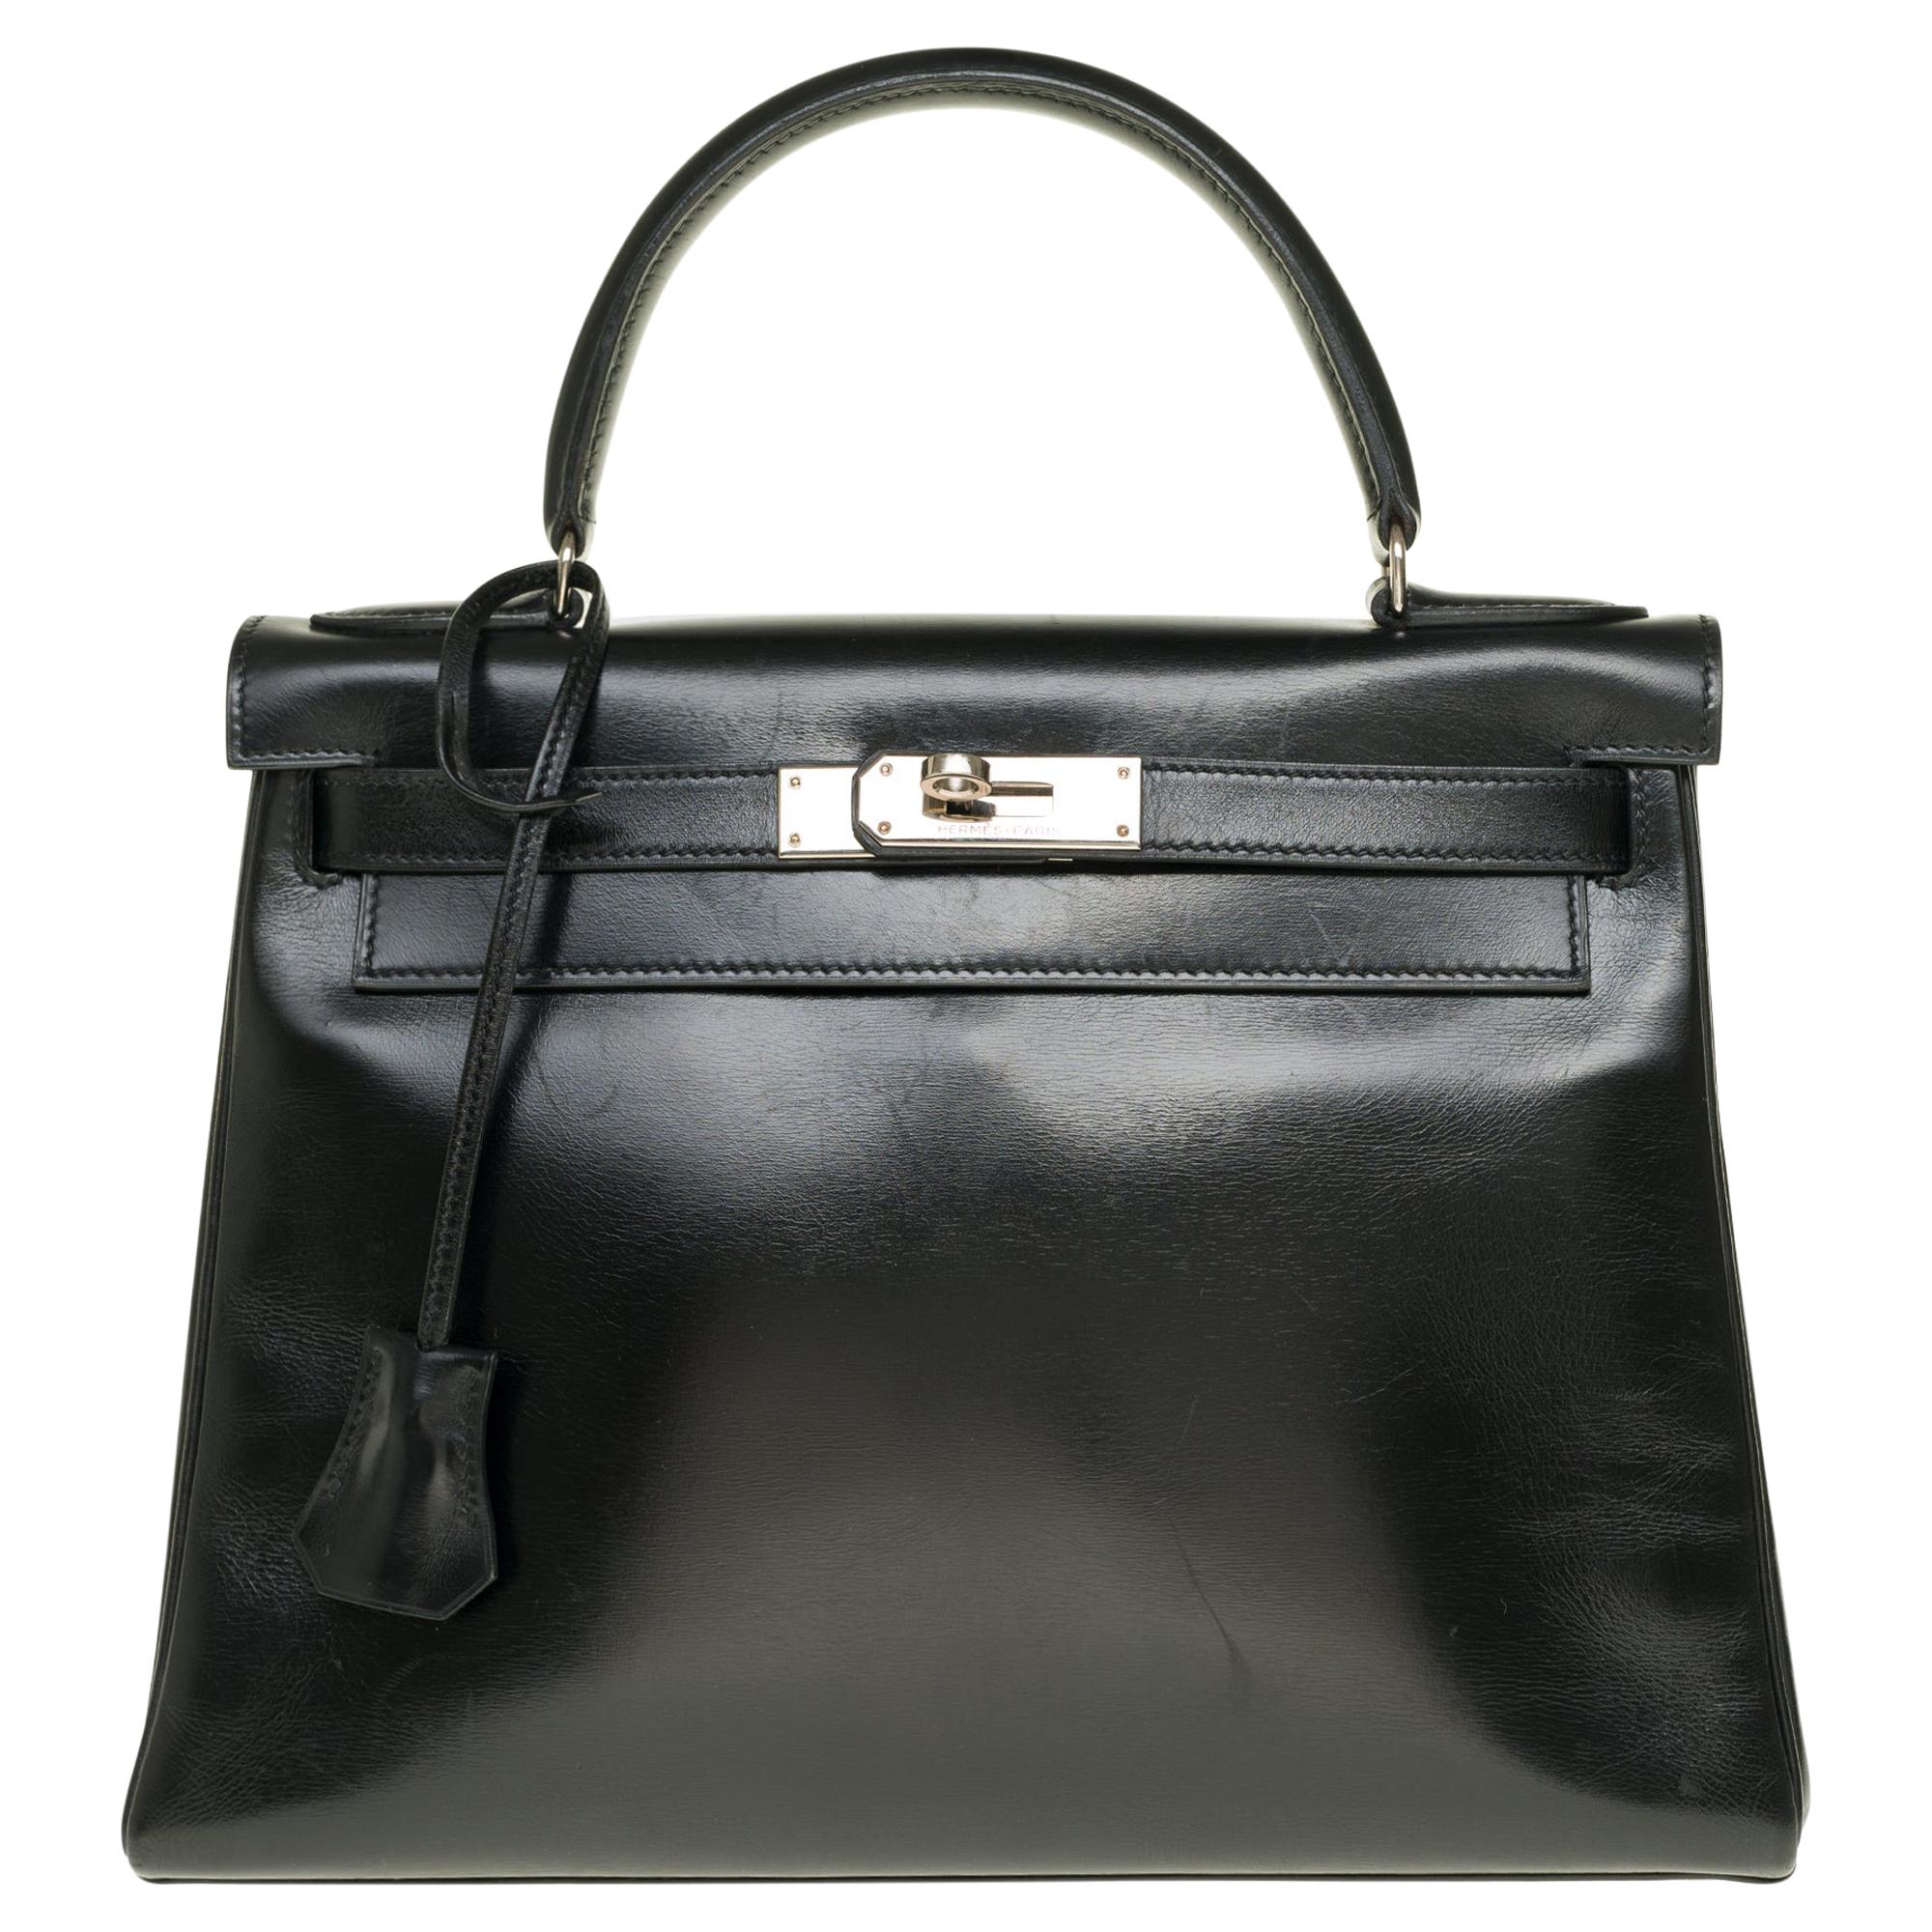 Hermès Kelly 28cm shoulder bag with strap in black calfskin and silver hardware